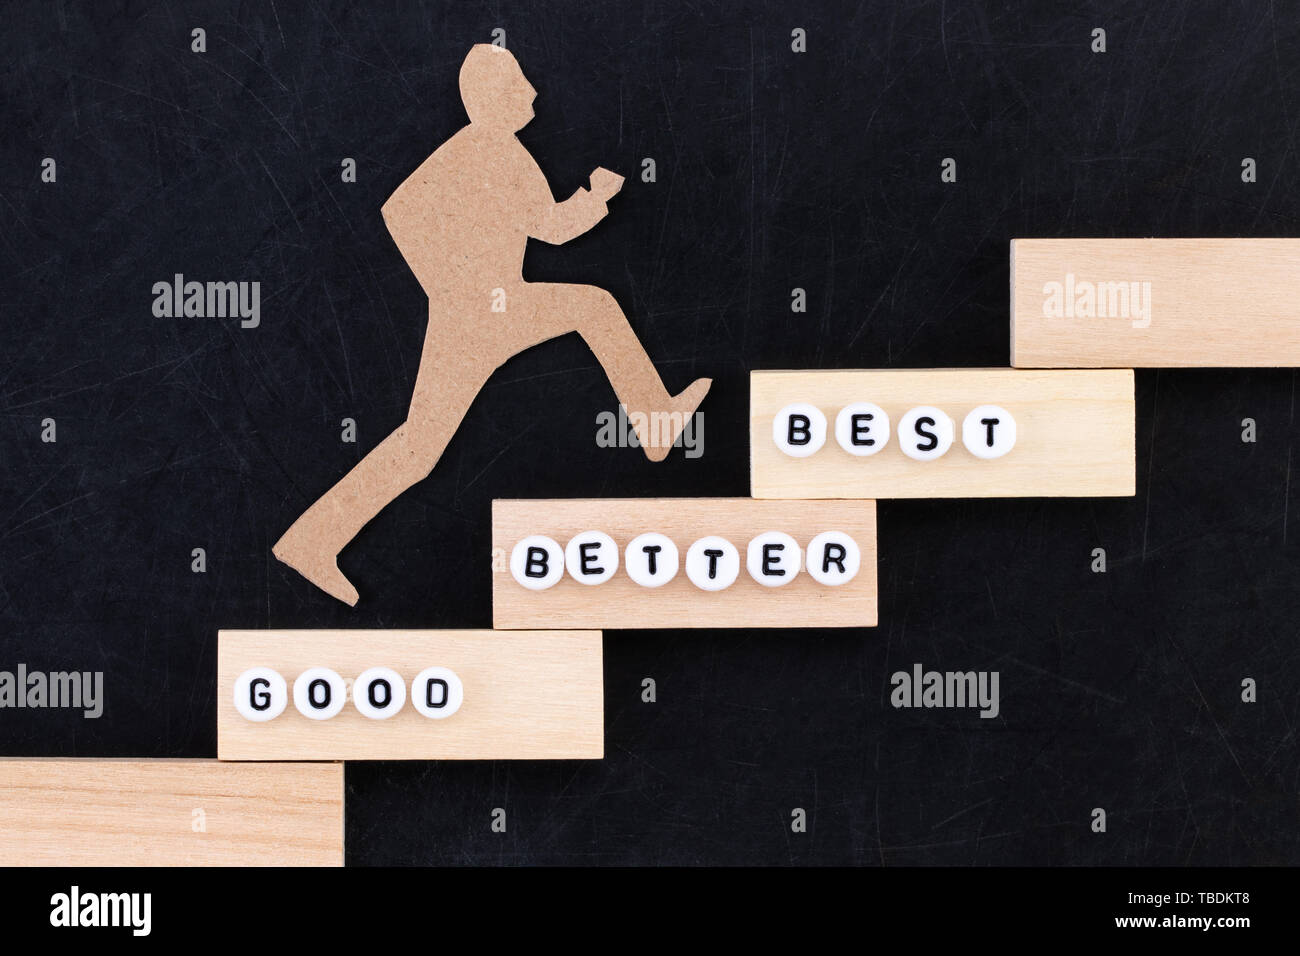 Buona - Migliore - miglior carta uomo salire gli scalini per raggiungere il successo in una immagine concettuale su sfondo nero. Foto Stock